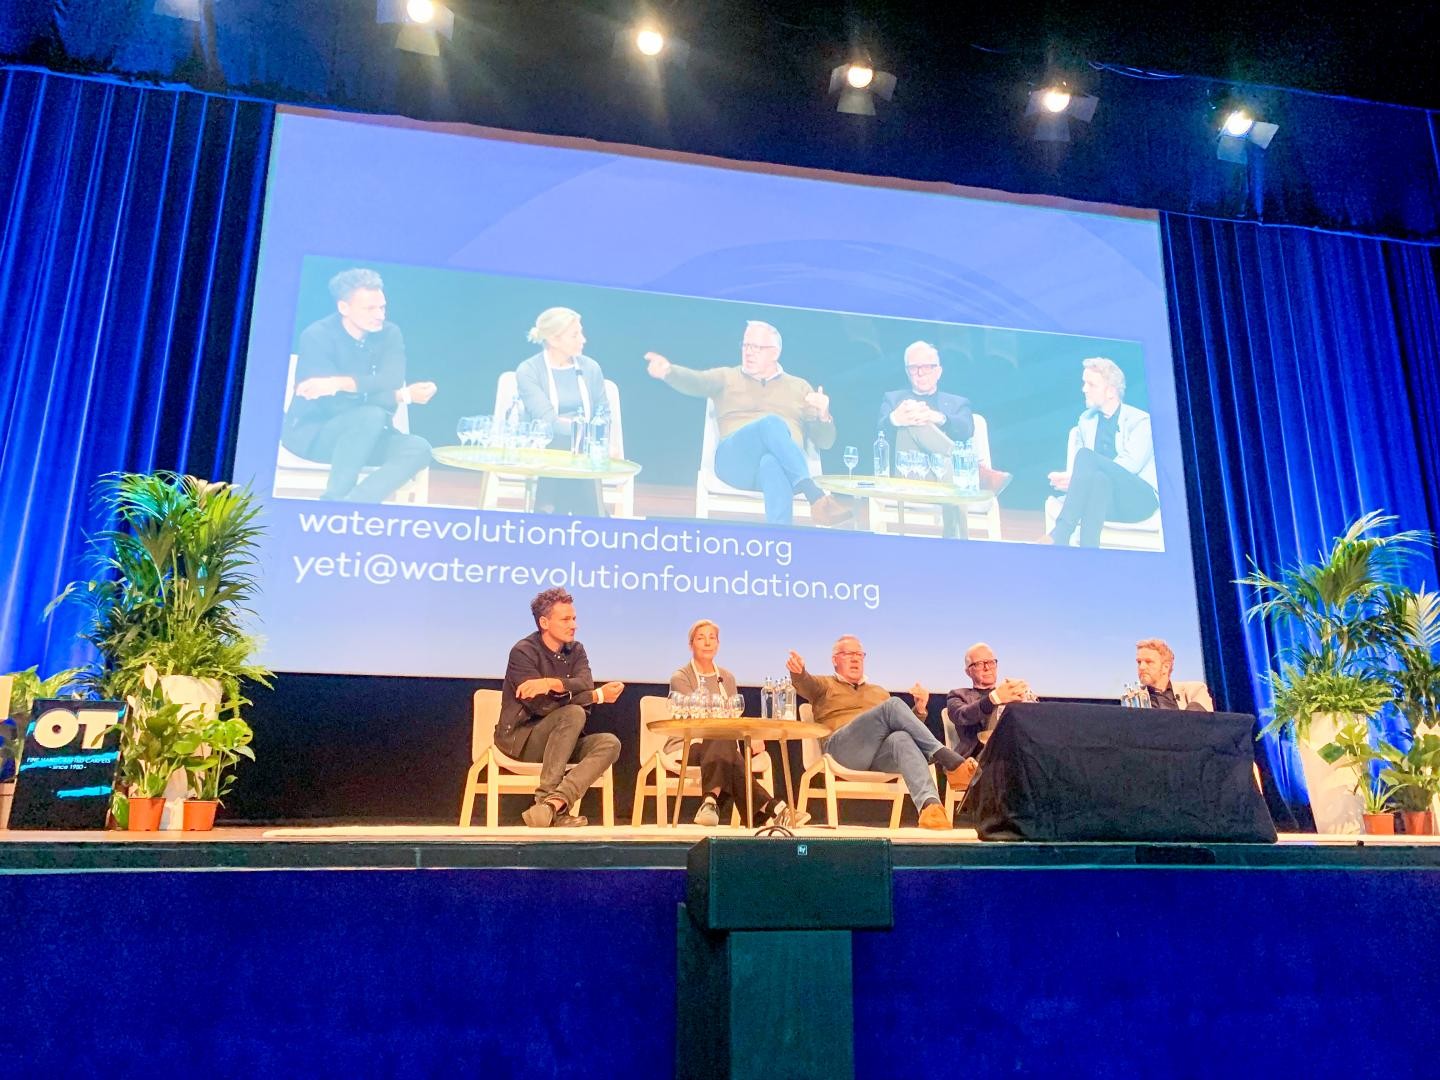 Martin Redmayne all'apertura della seconda giornata del Global Superyacht Forum focalizzata su The Water Revolution Foundation